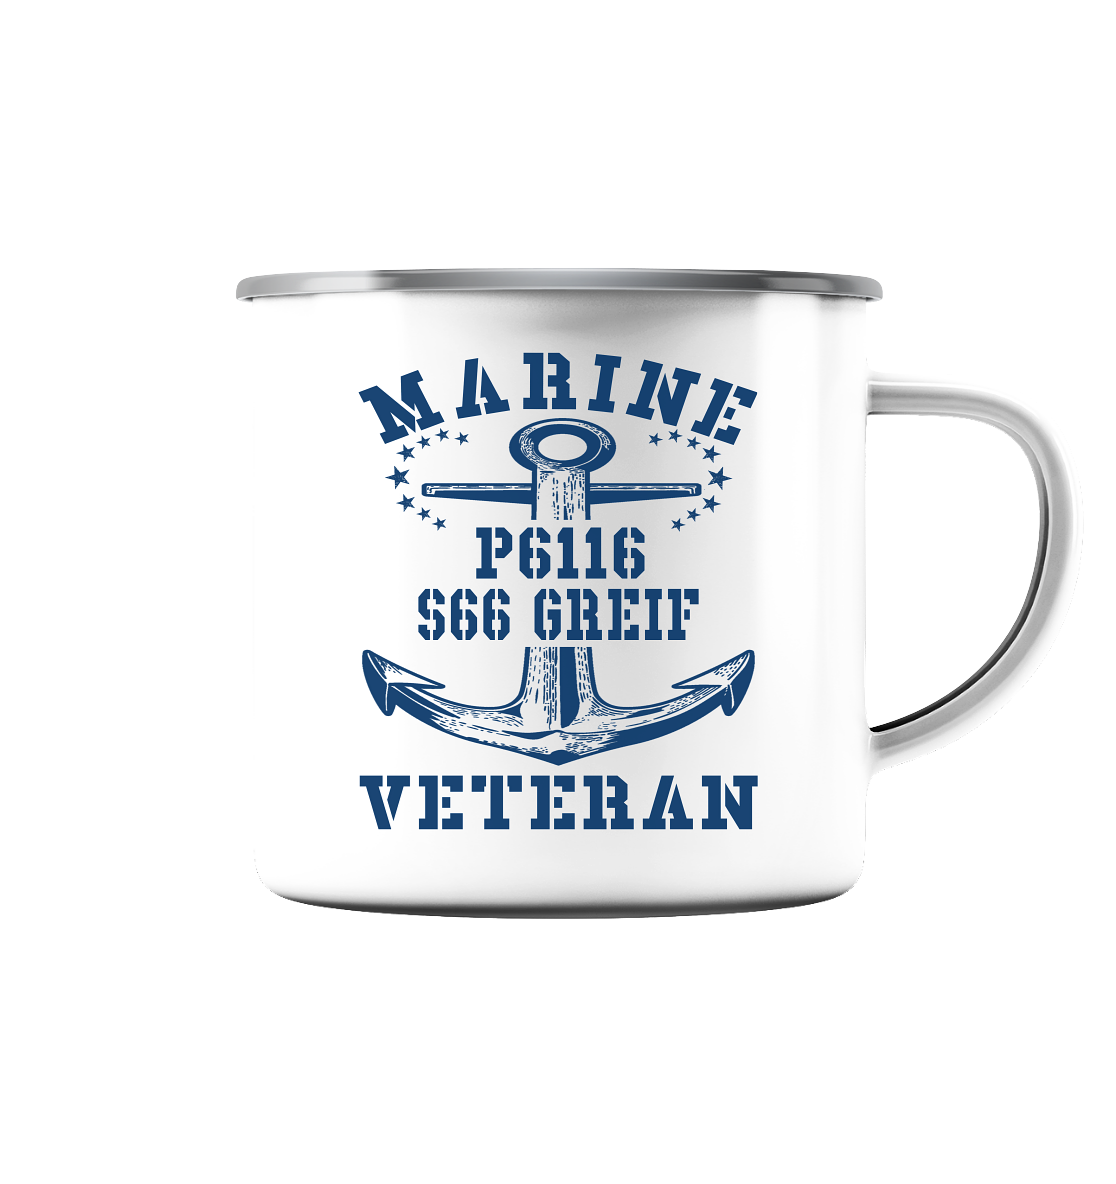 FK-Schnellboot P6116 GREIF Marine Veteran - Emaille Tasse (Silber)